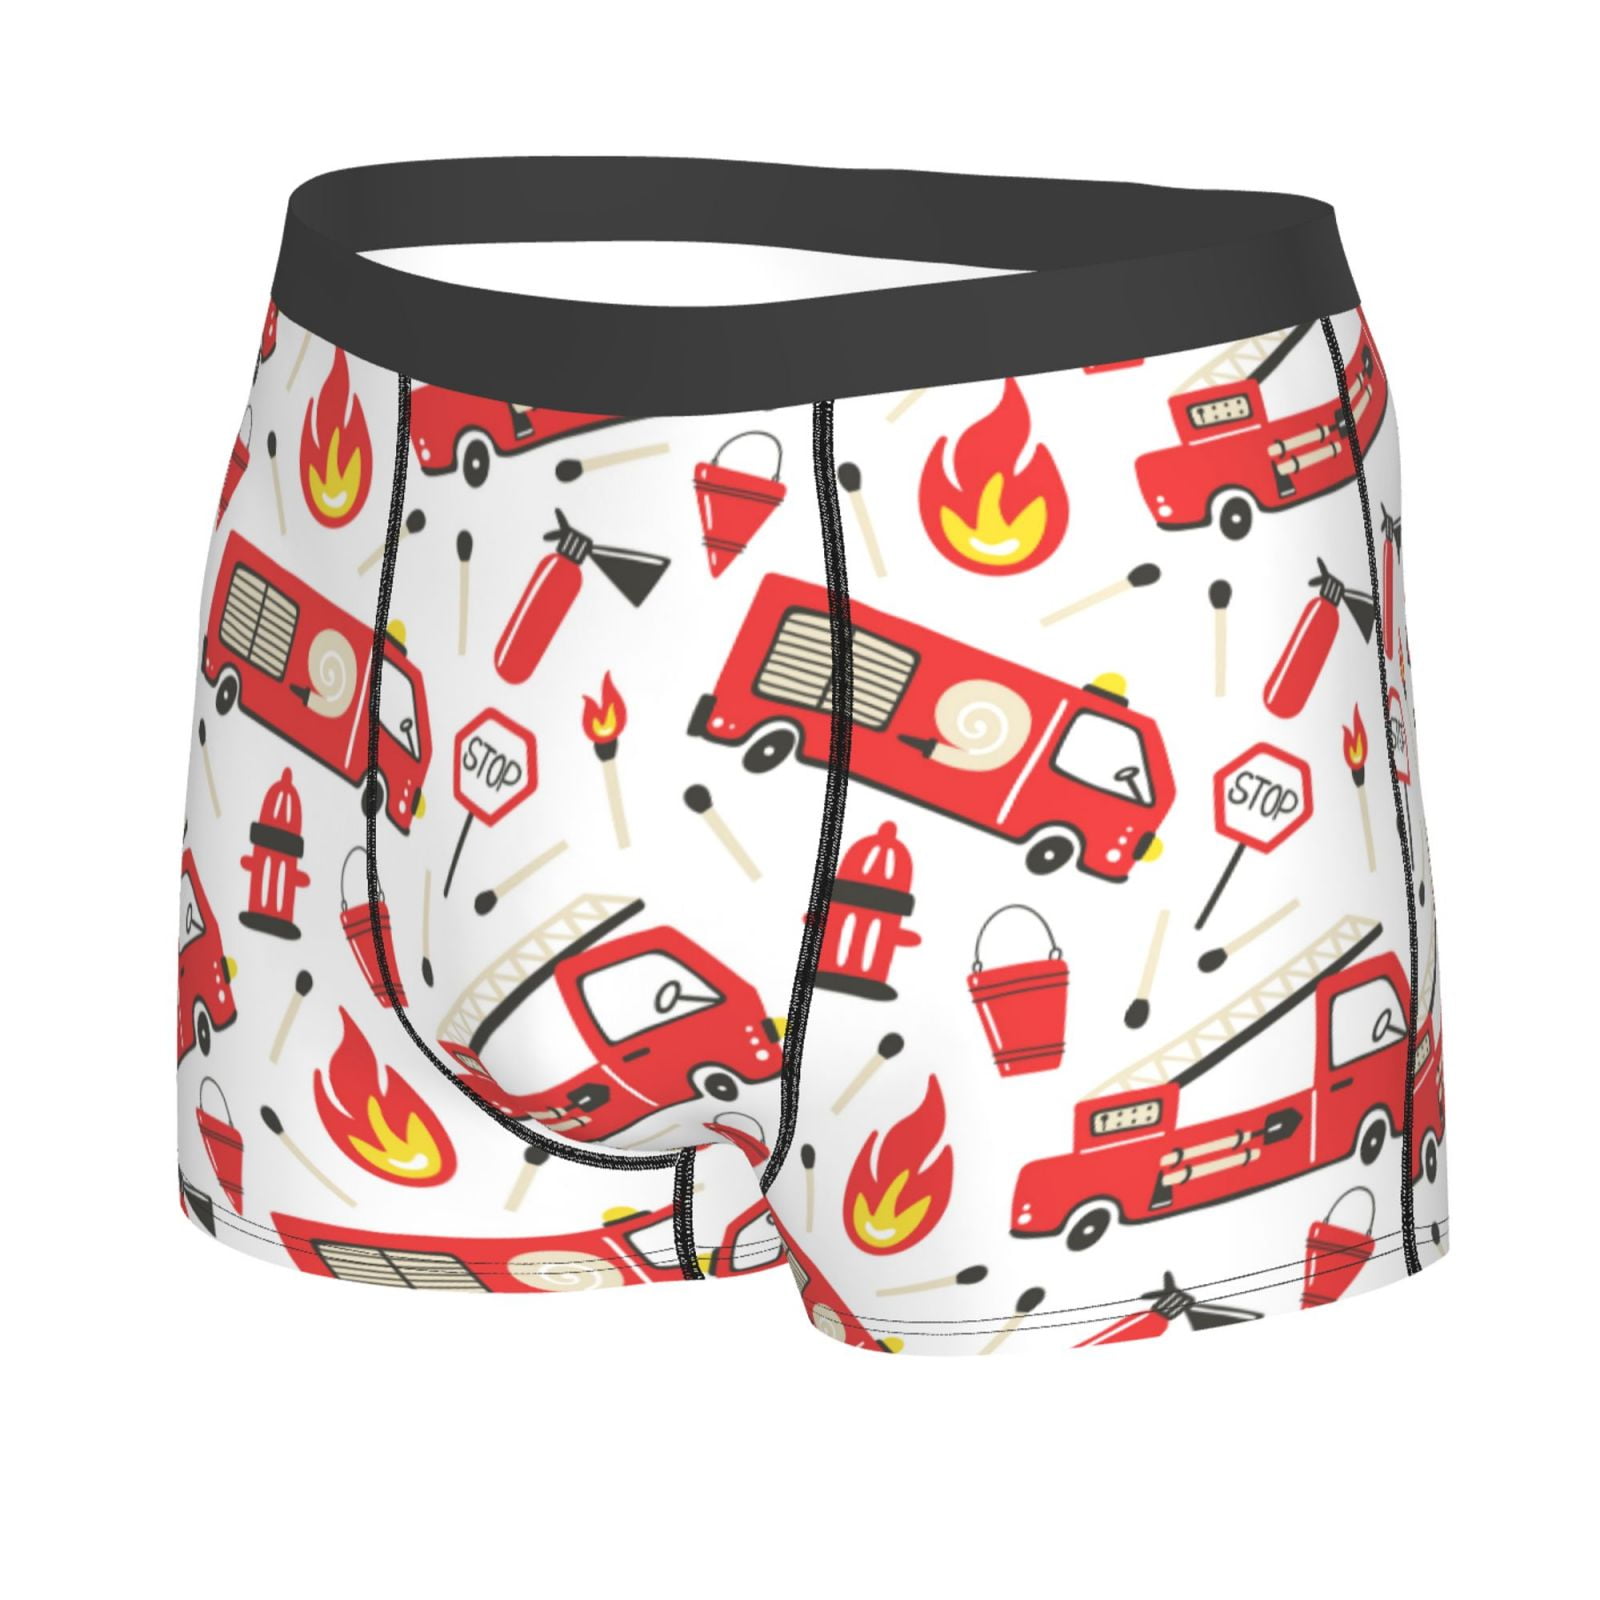 Kll Fire Truck Men'S Cotton Boxer Briefs Underwear-Medium